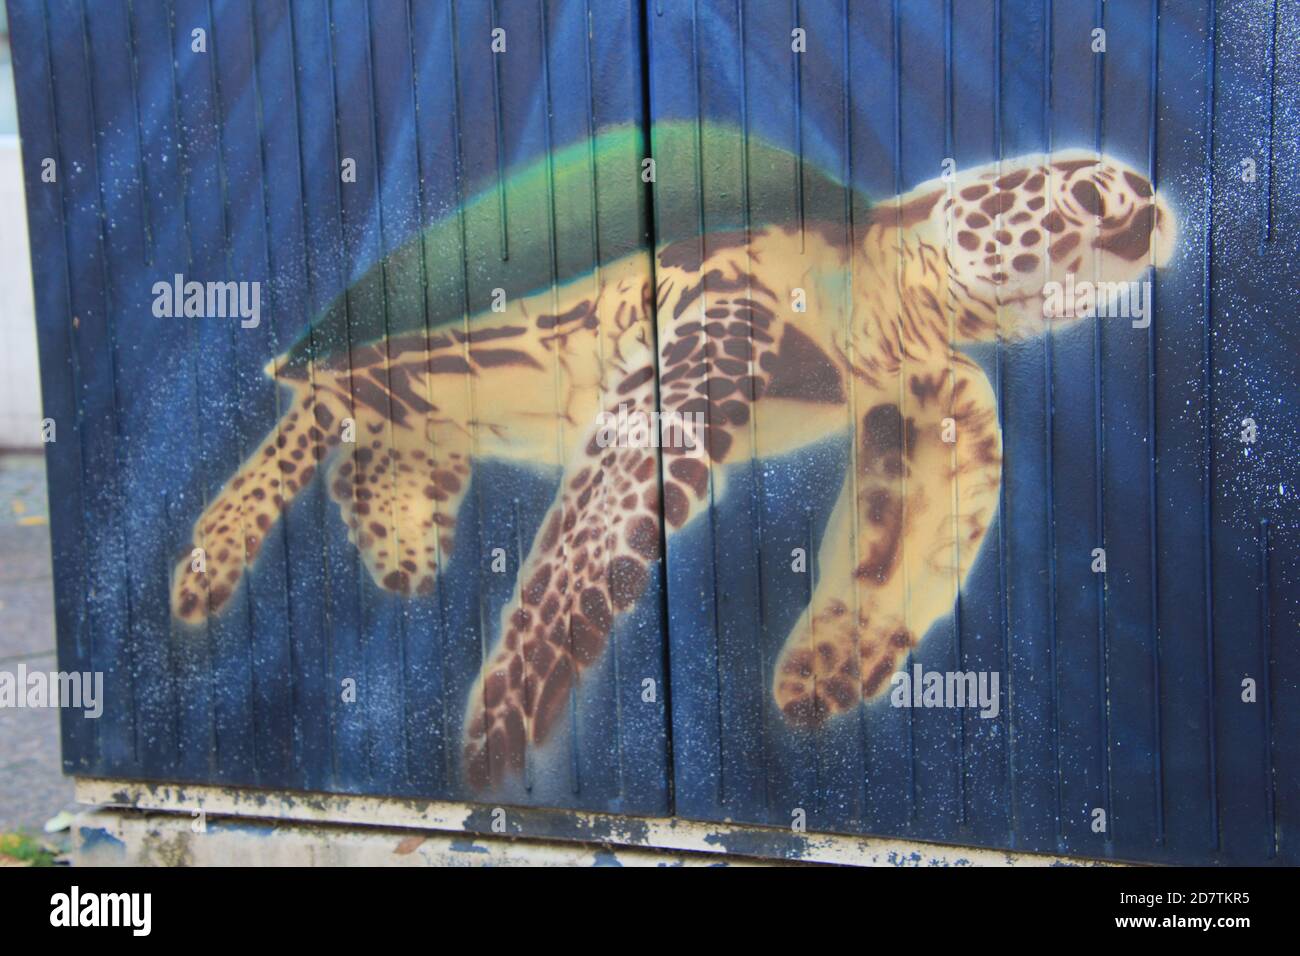 Streetart, Graffiti auf einem Stromkasten am Straßenrand, Der Künstler hat den Kasten mit einer Meeres-Schildkröte verziert. Stock Photo